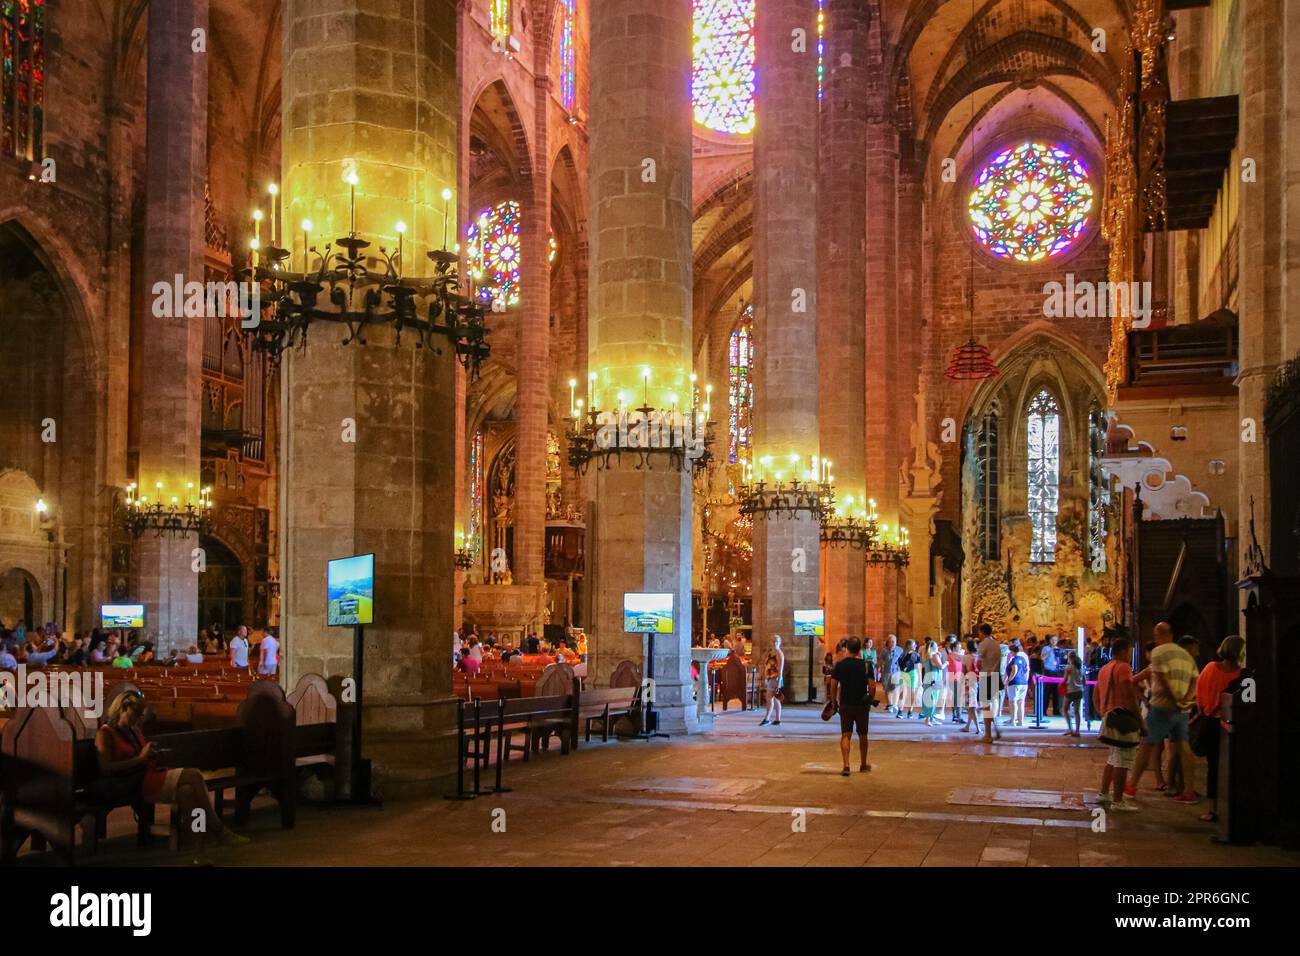 Palma, Maiorca - 5 agosto 2019 : nave di la Seu, la Cattedrale di Santa Maria di Palma de Mallorca nelle Isole Baleari (Spagna) - gotico medievale Foto Stock